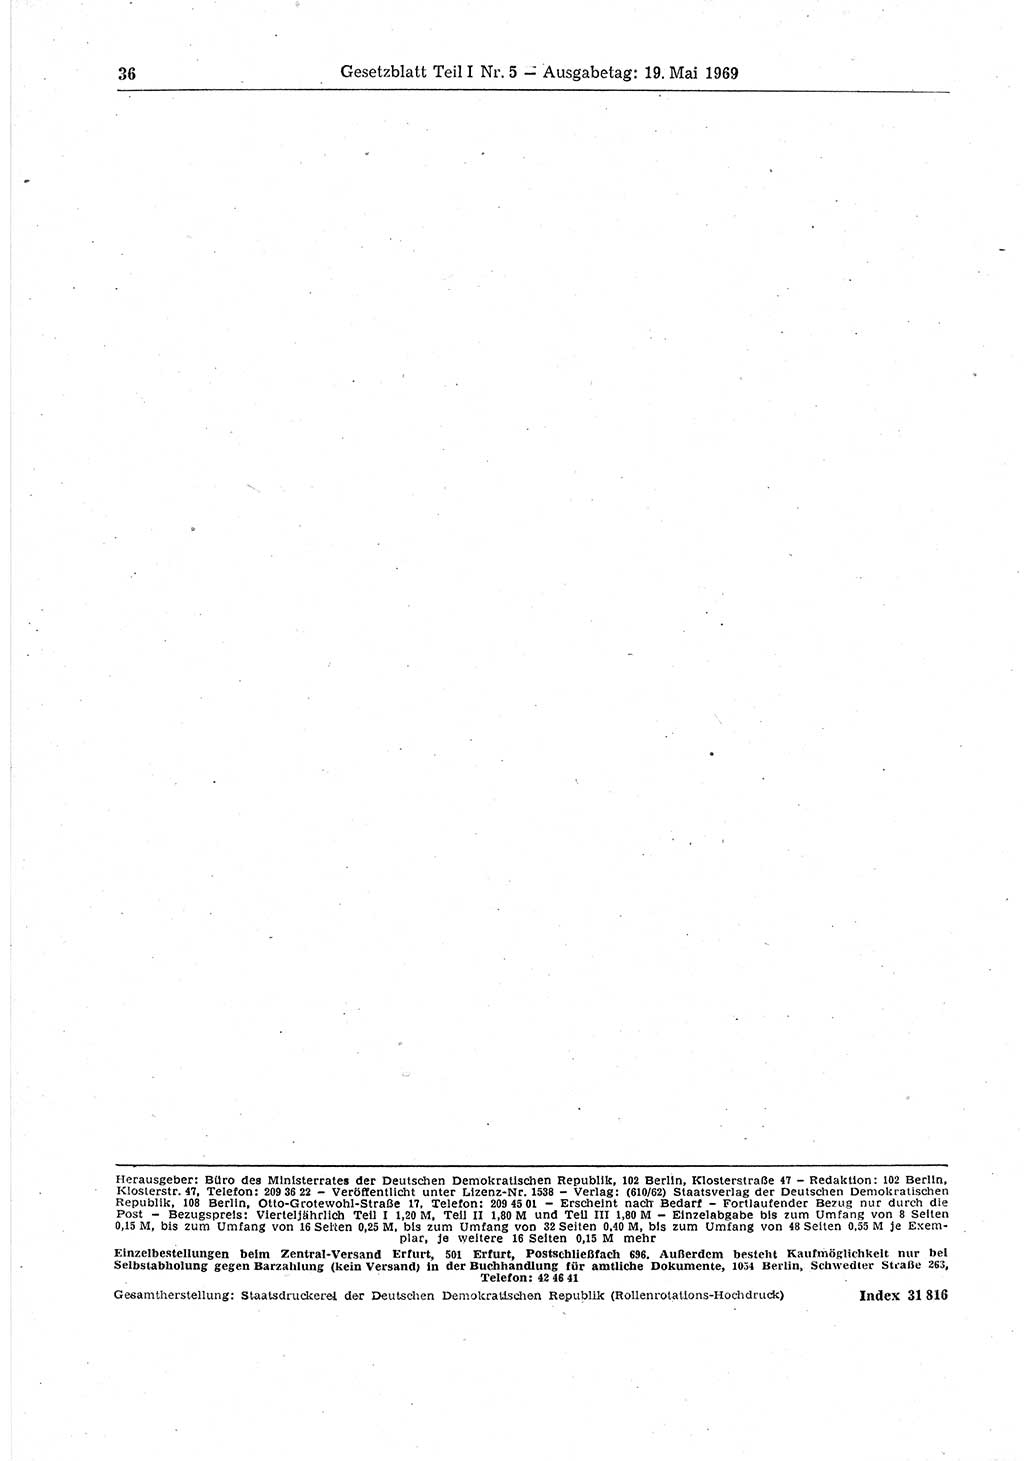 Gesetzblatt (GBl.) der Deutschen Demokratischen Republik (DDR) Teil Ⅰ 1969, Seite 36 (GBl. DDR Ⅰ 1969, S. 36)